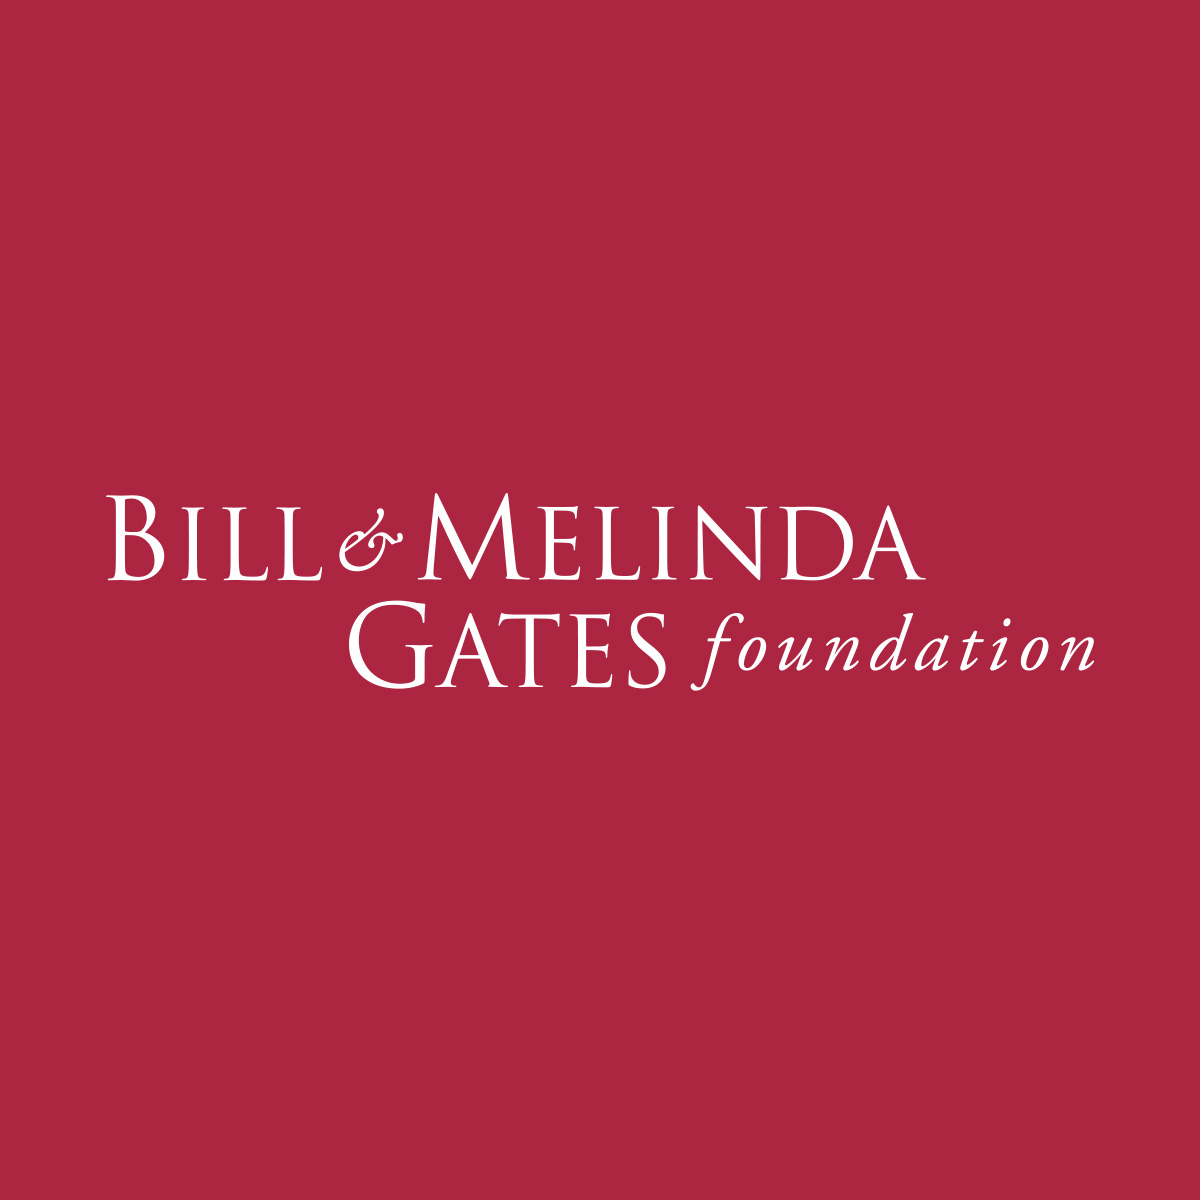 盖茨<font color="red">基金</font>会支持抗艾滋病毒和疟疾研究